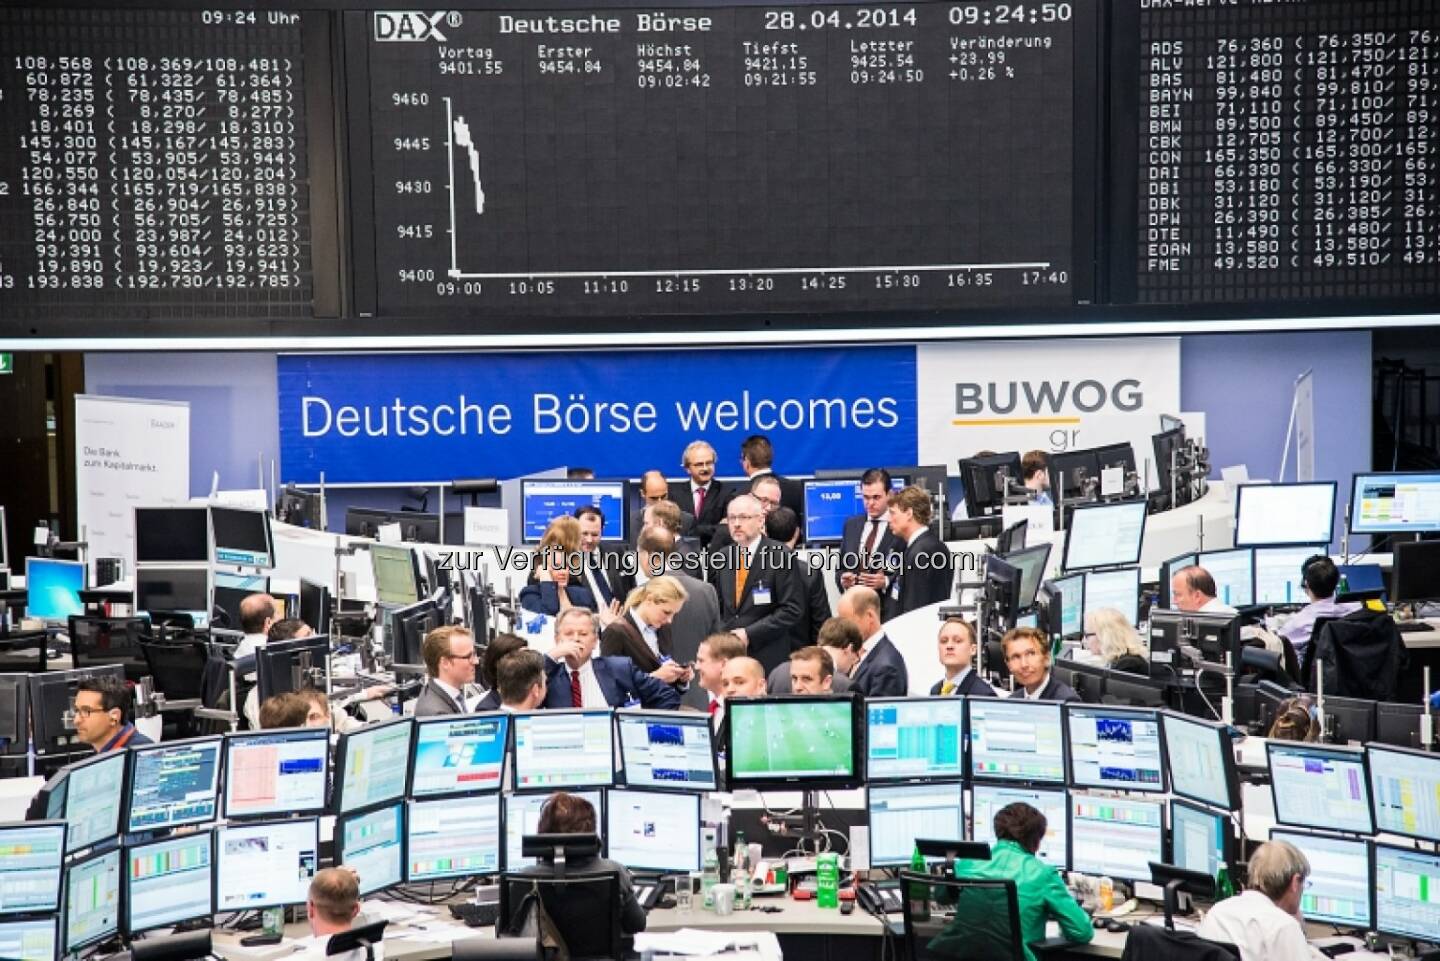 Deutsche Börse welcomes Buwog